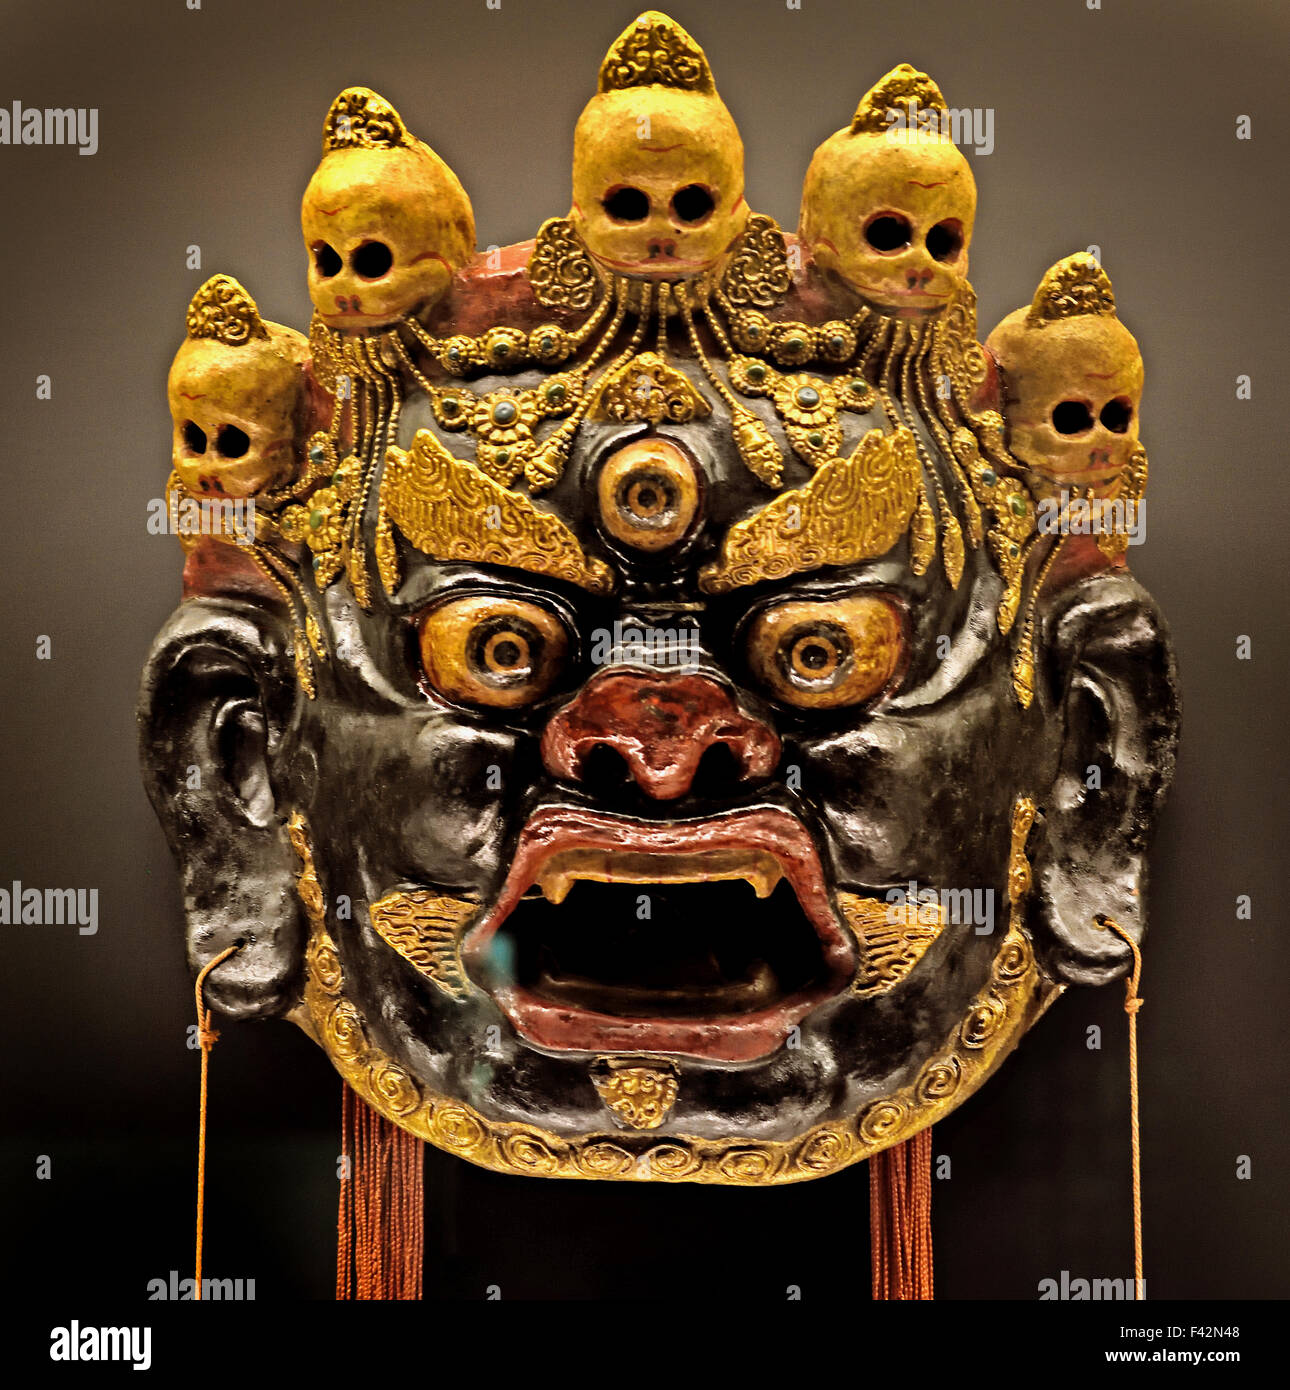 Verniciato e maschera laccato Cham danza1900-1950 il Tibetano Tibet ( Guida - Qinghai ) Gansu al Museo di Shanghai di Antica Arte Cinese Cina Foto Stock